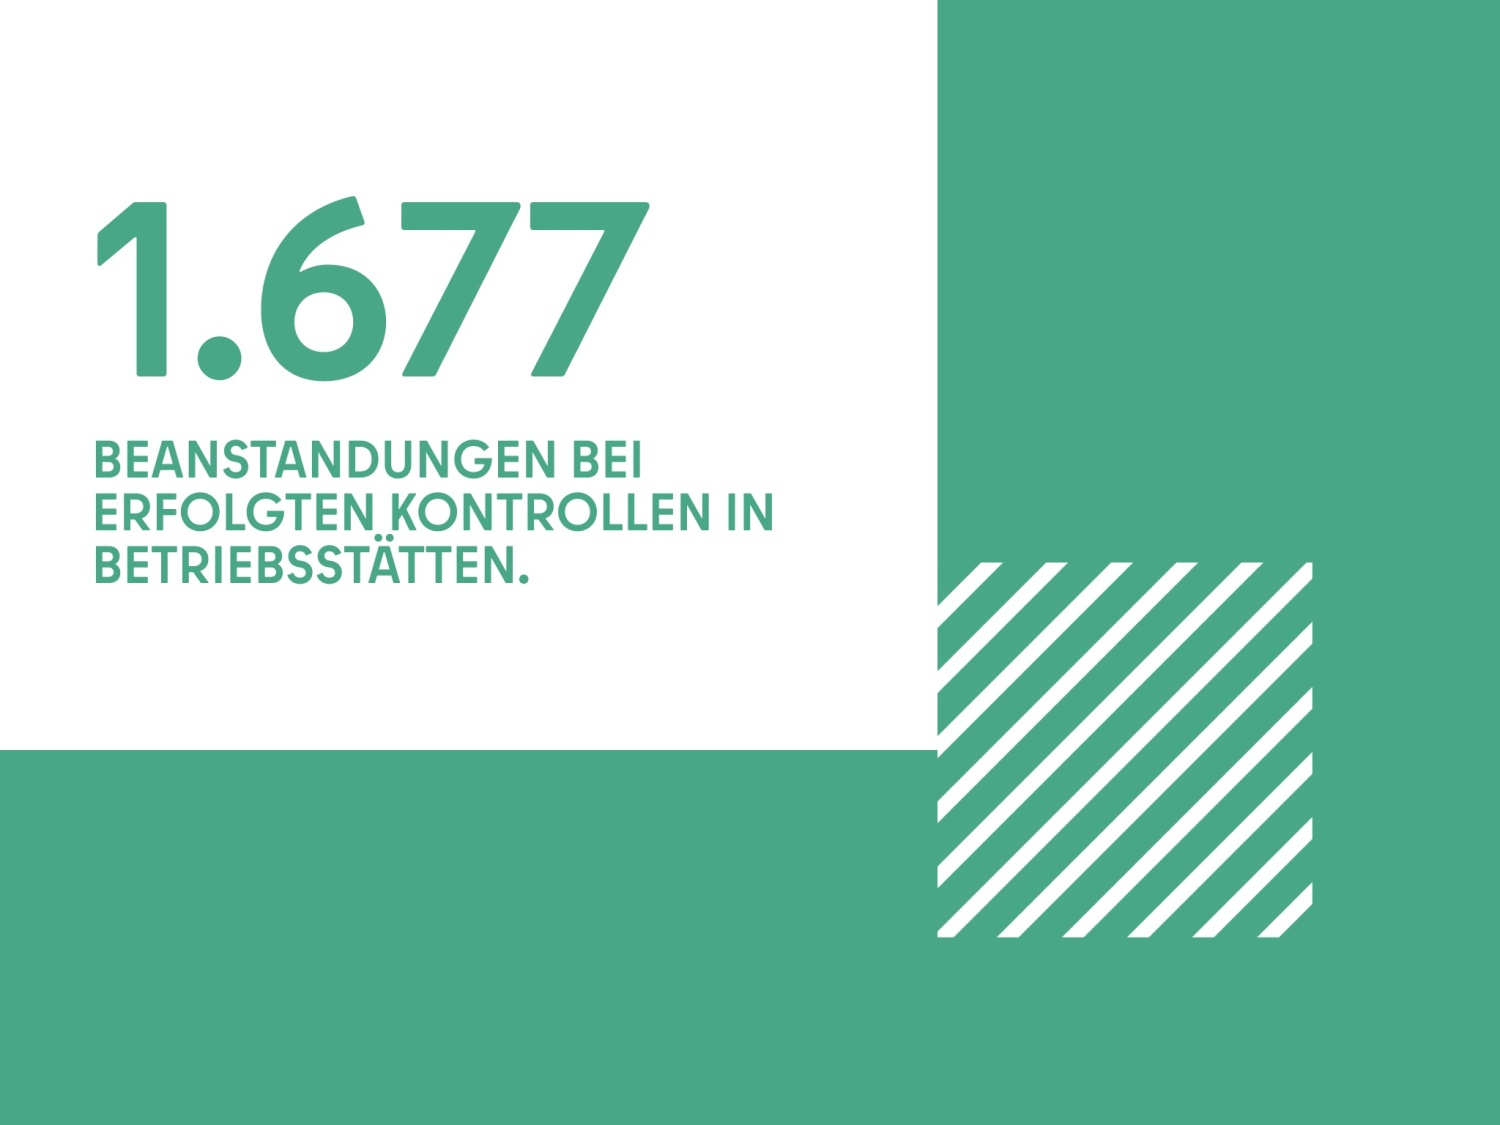 1.677 BEANSTANDUNGEN BEI ERFOLGTEN KONTROLLEN IN BETRIEBSSTÄTTEN.